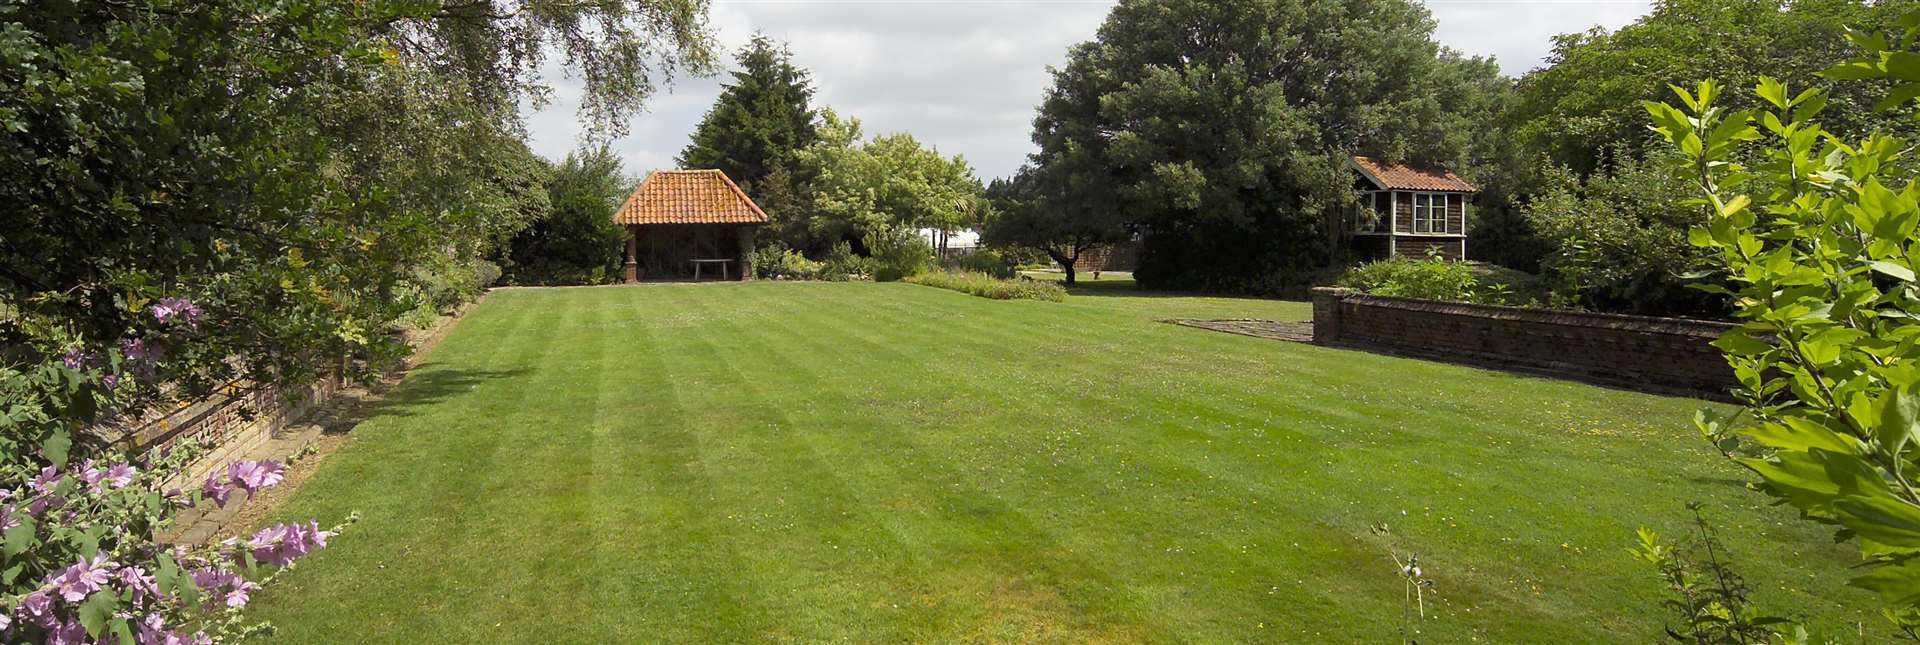 The croquet lawn has a pavilion